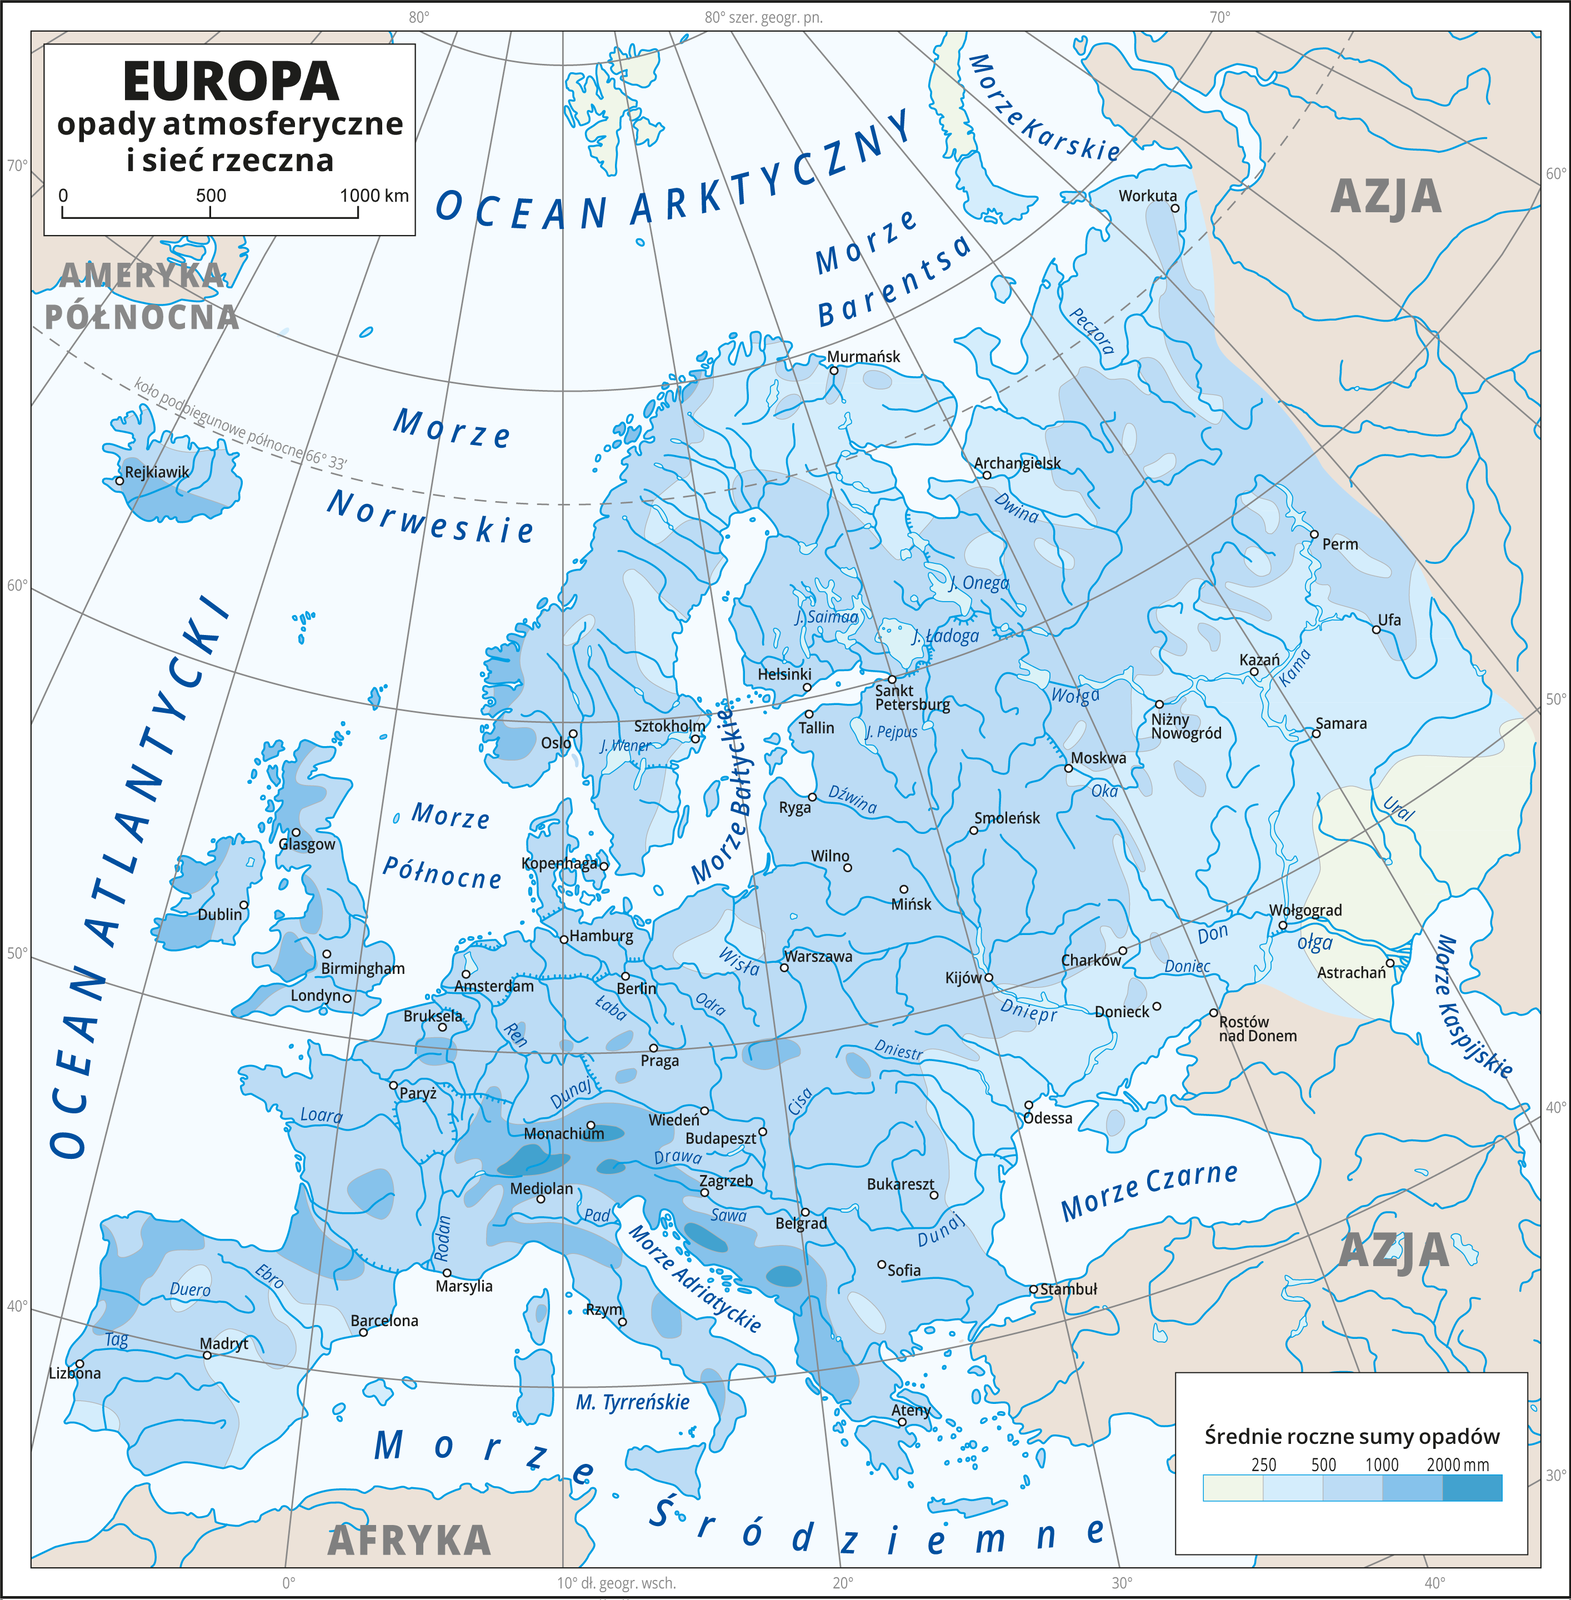 Ilustracja przedstawia mapę Europy. Na mapie przedstawiono i opisano sieć rzeczną. Nasyceniem odcieni koloru niebieskiego przedstawiono średnie roczne sumy opadów. Kolor najciemniejszy (2000 milimetrów) nad Morze Adriatyckim i Oceanem Atlantyckim. Kolor najjaśniejszy (poniżej 250 milimetrów) w kierunku południowo-wschodnim. Kropkami zaznaczono miasta główne miasta. Mapa zawiera siatkę kartograficzną, dookoła mapy w białej ramce opisano współrzędne geograficzne co dziesięć stopni.